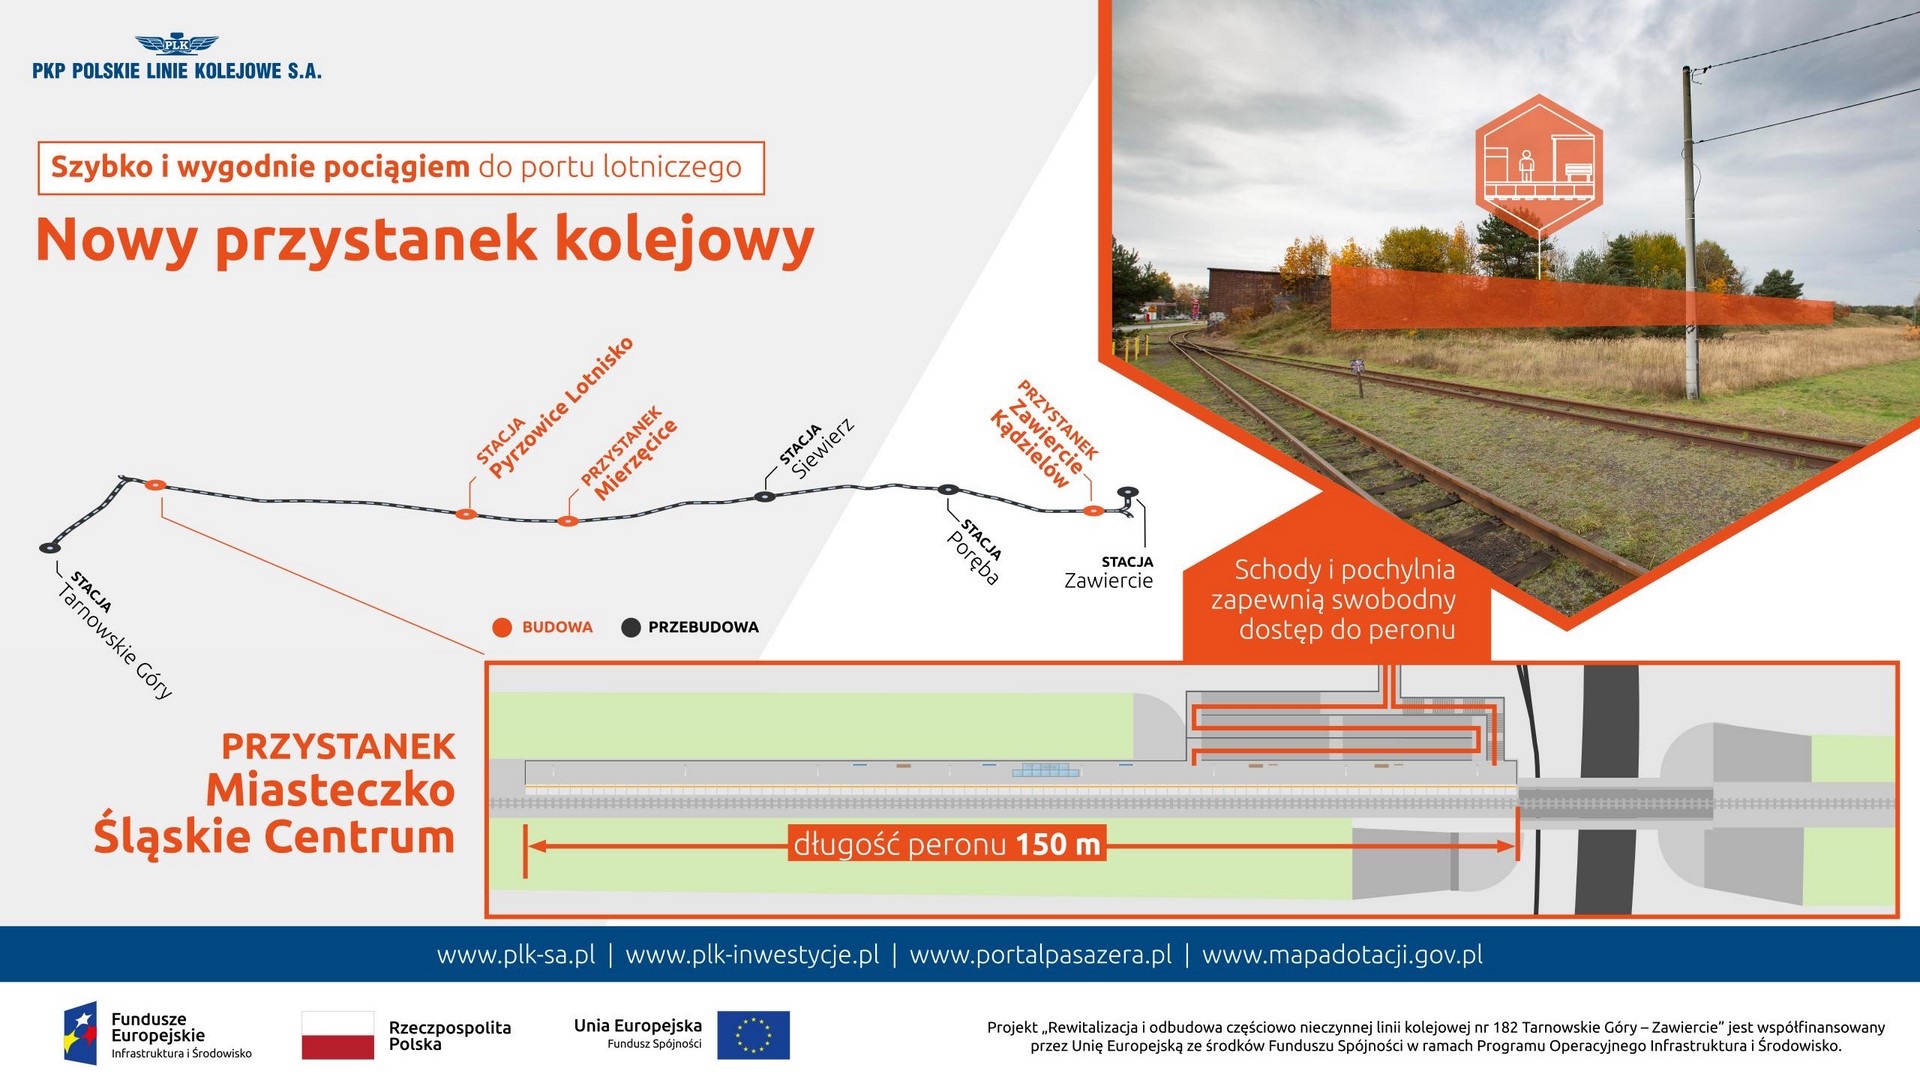 Infografika przestawia zdjęcie z zaznaczonym miejscem budowy nowego przystanku kolejowego pt. Miasteczko Śląskie Centrum.